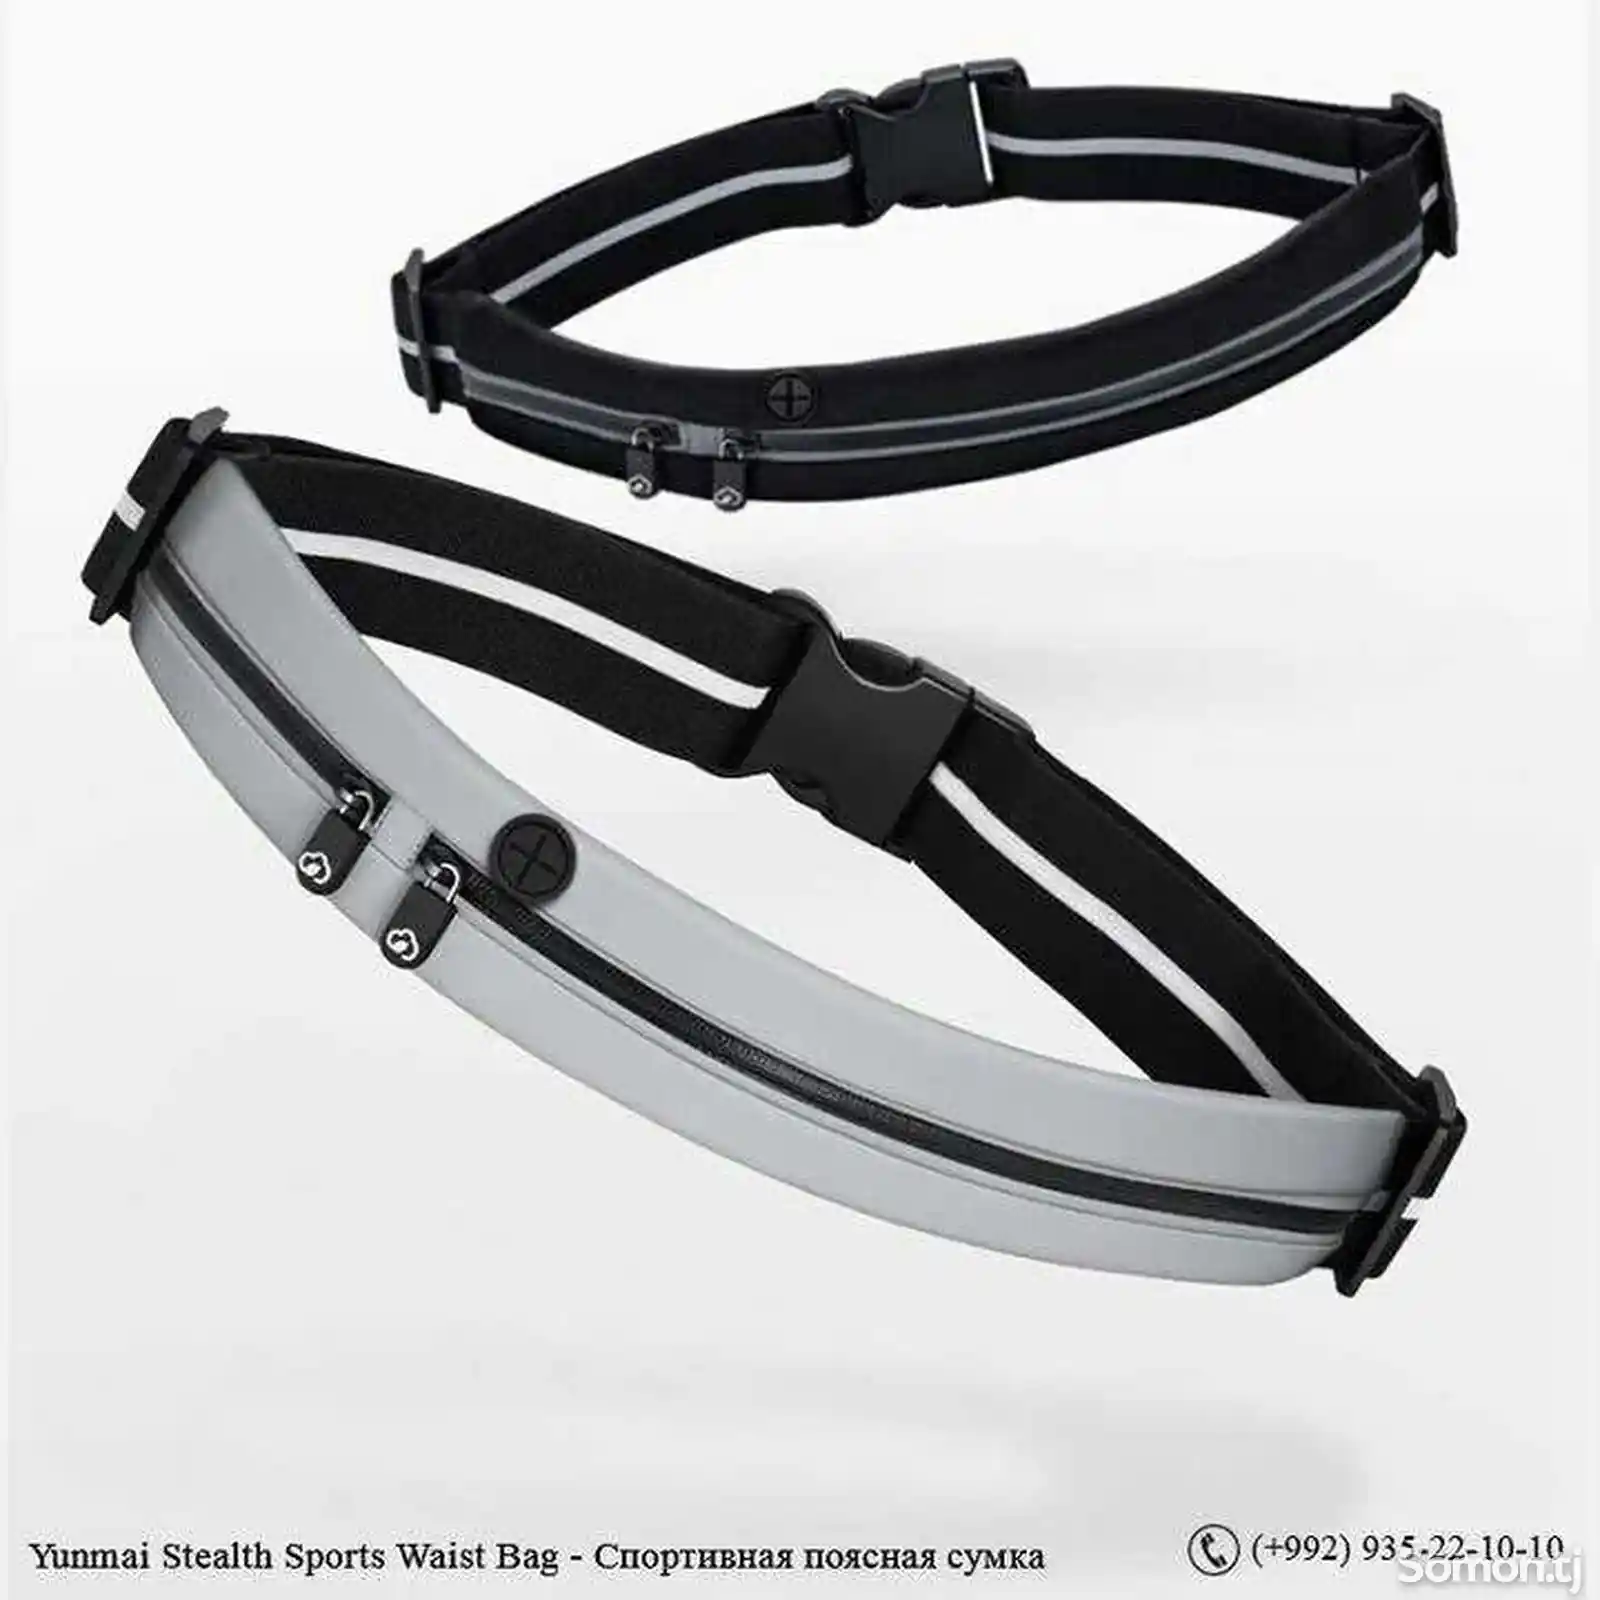 Спортивная поясная сумка Yunmai Stealth Sports Waist Bag-7